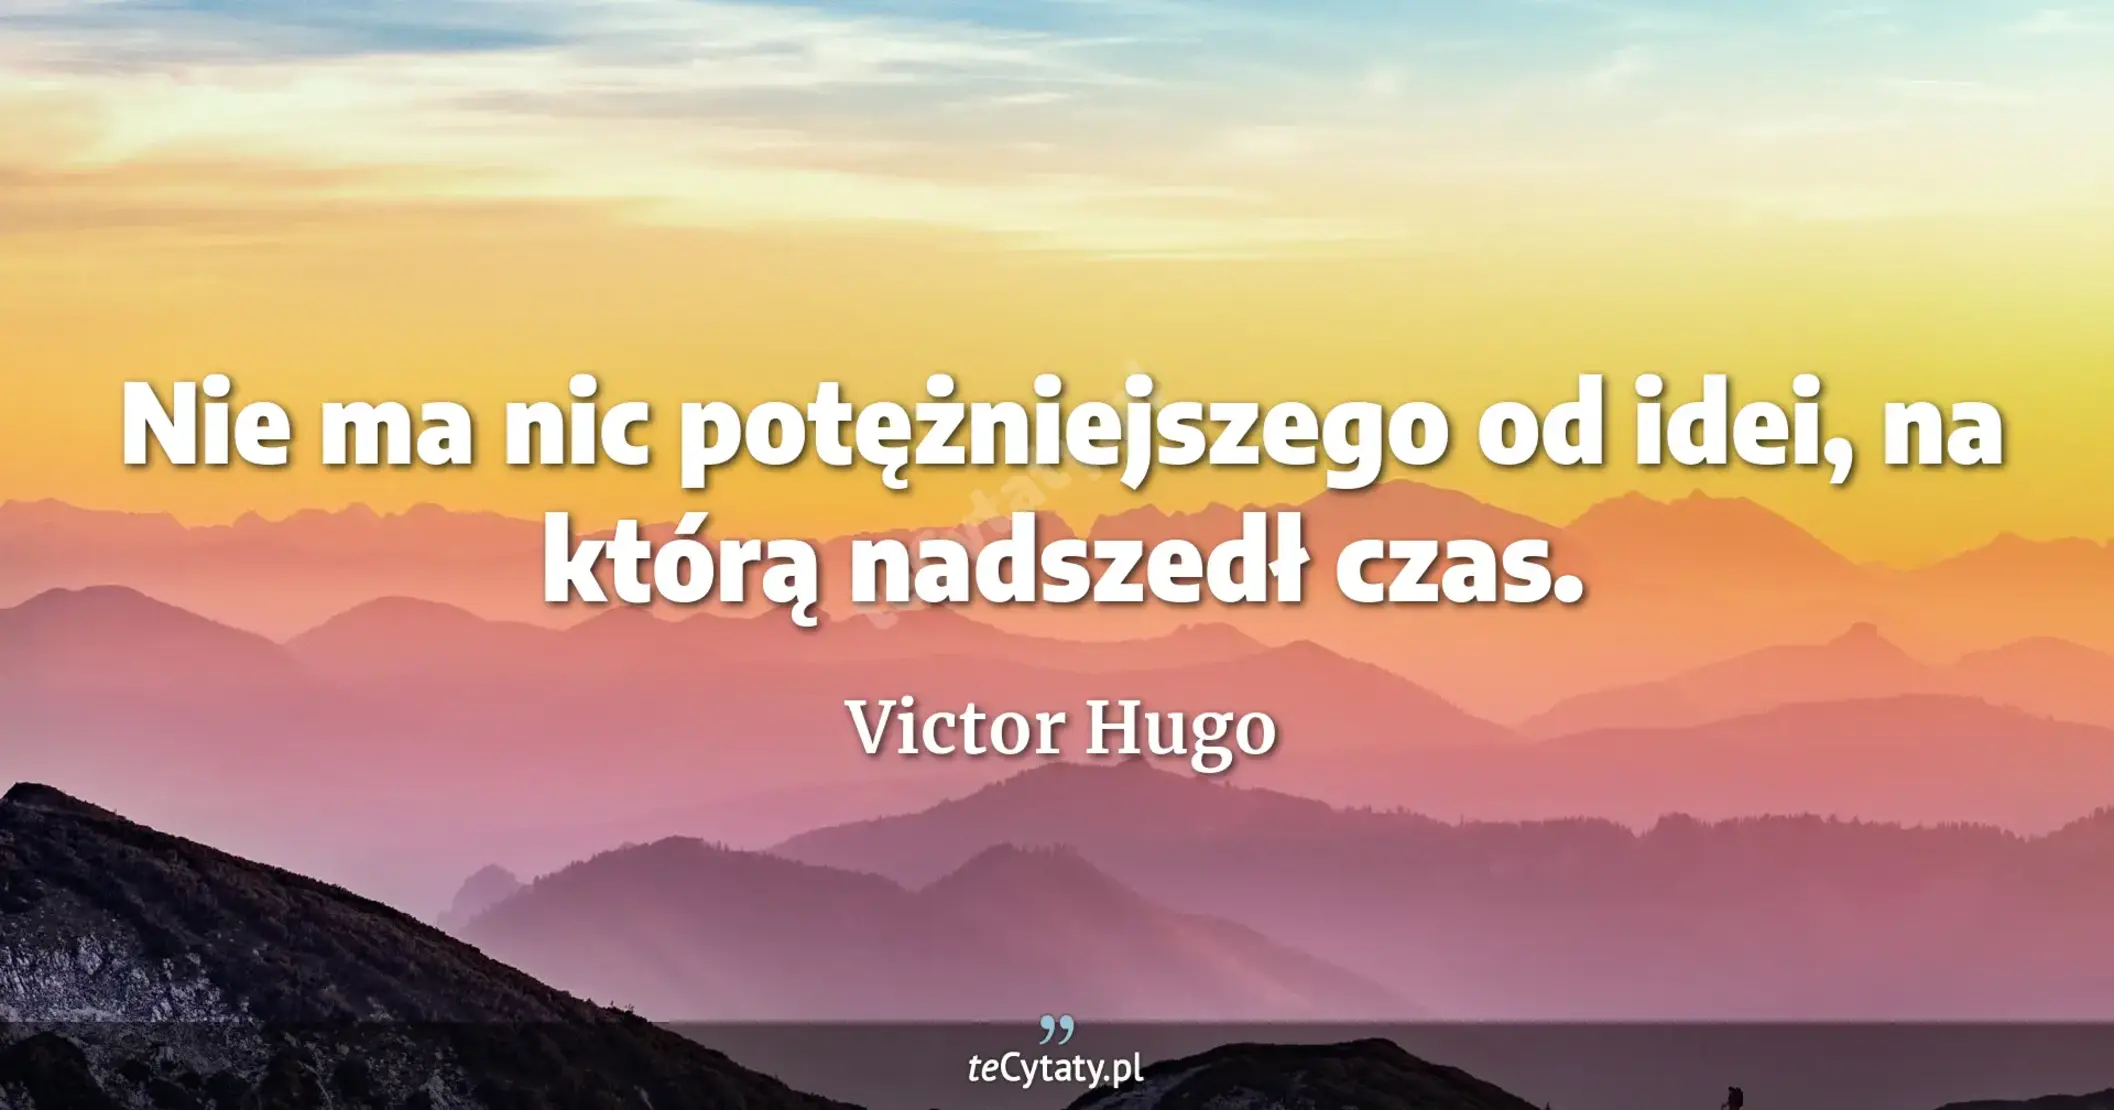 Nie ma nic potężniejszego od idei, na którą nadszedł czas. - Victor Hugo